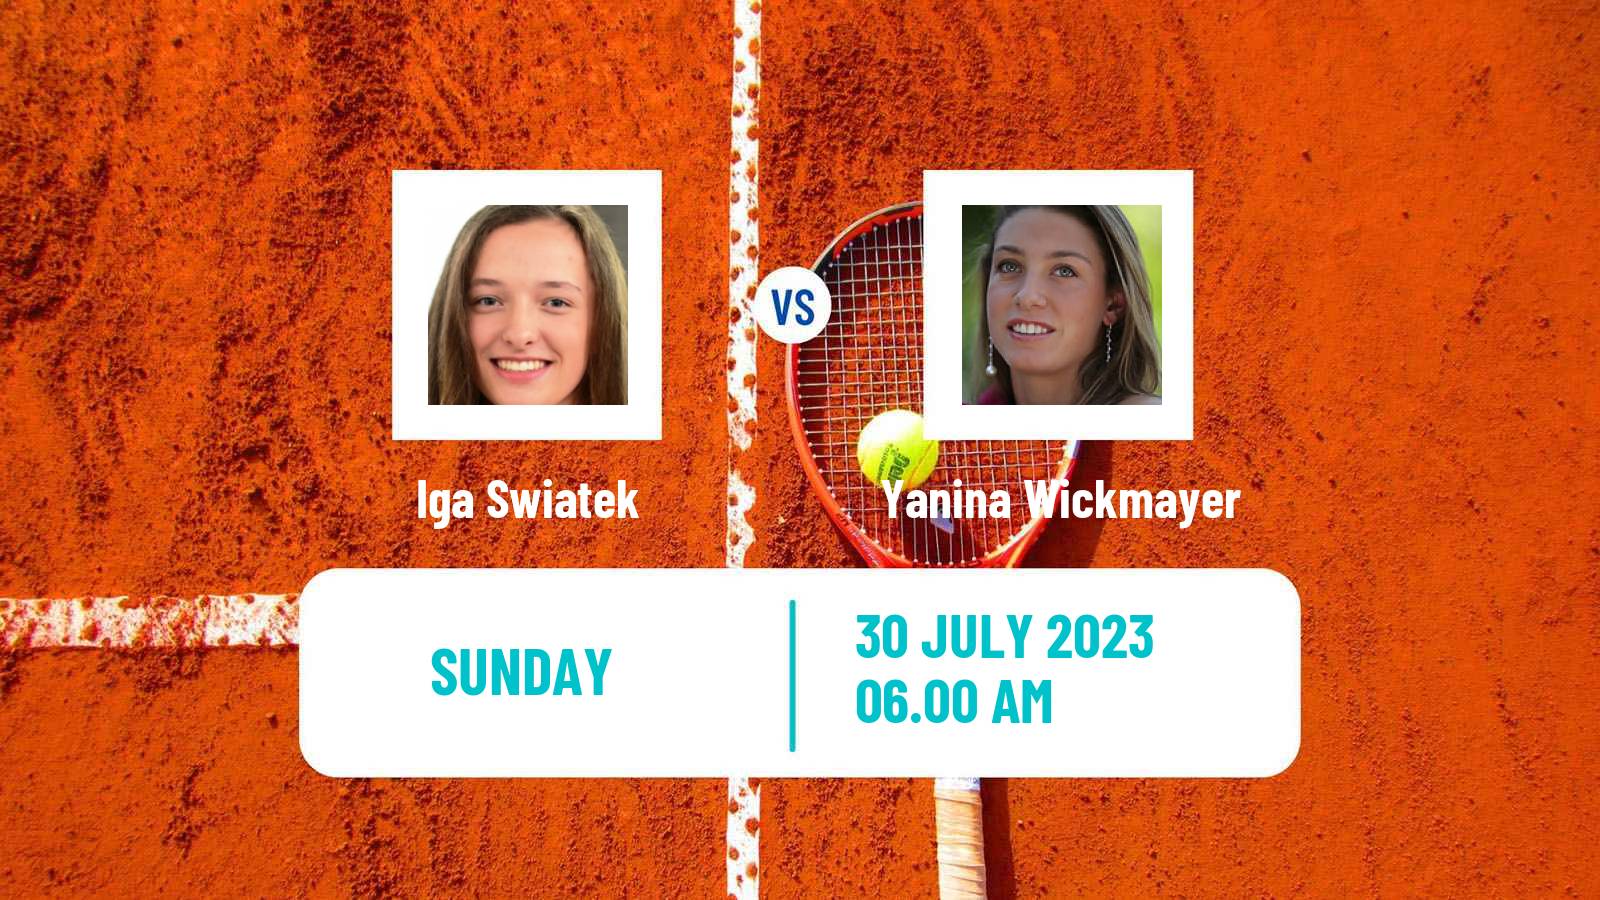 Tennis WTA Warsaw Iga Swiatek - Yanina Wickmayer